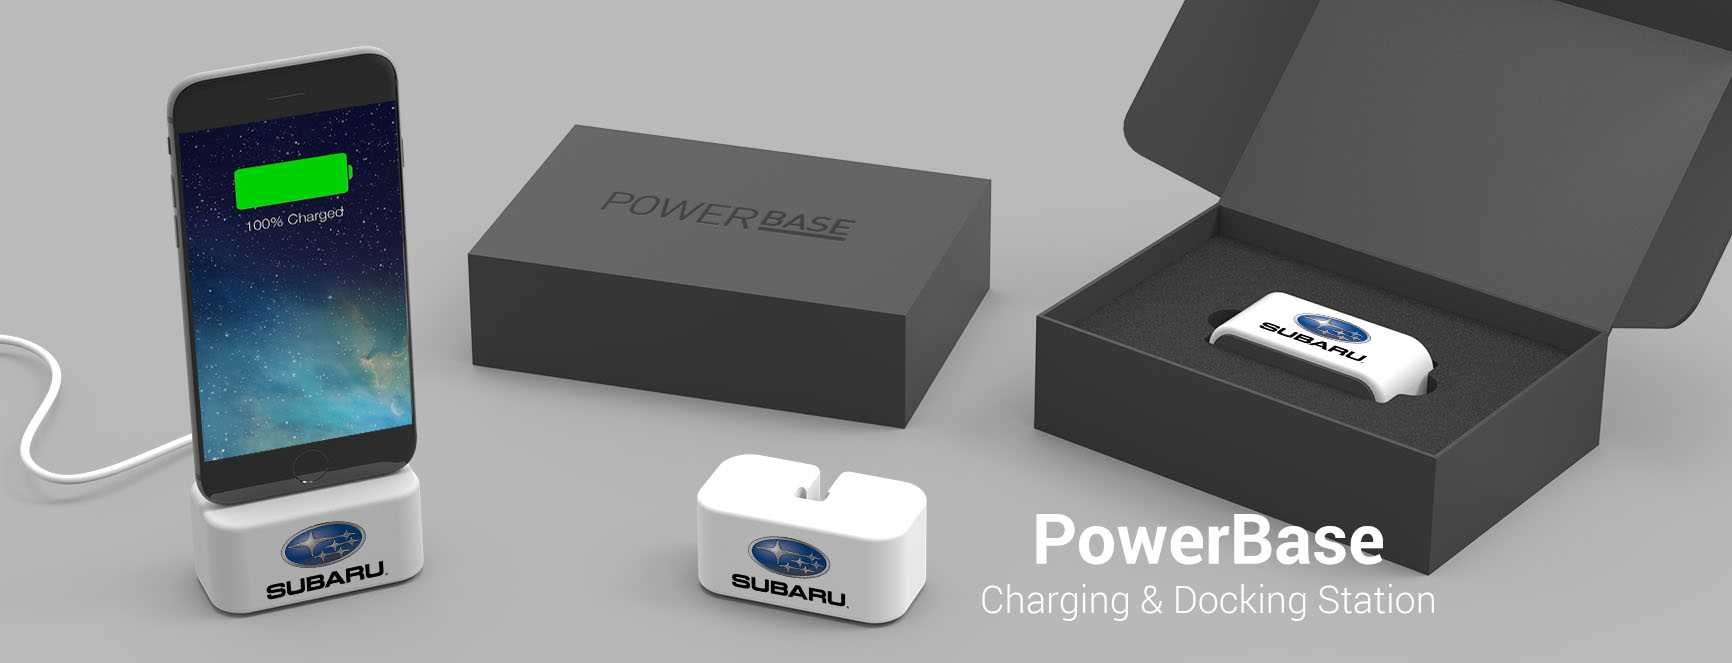 PowerBase Standard Packaging